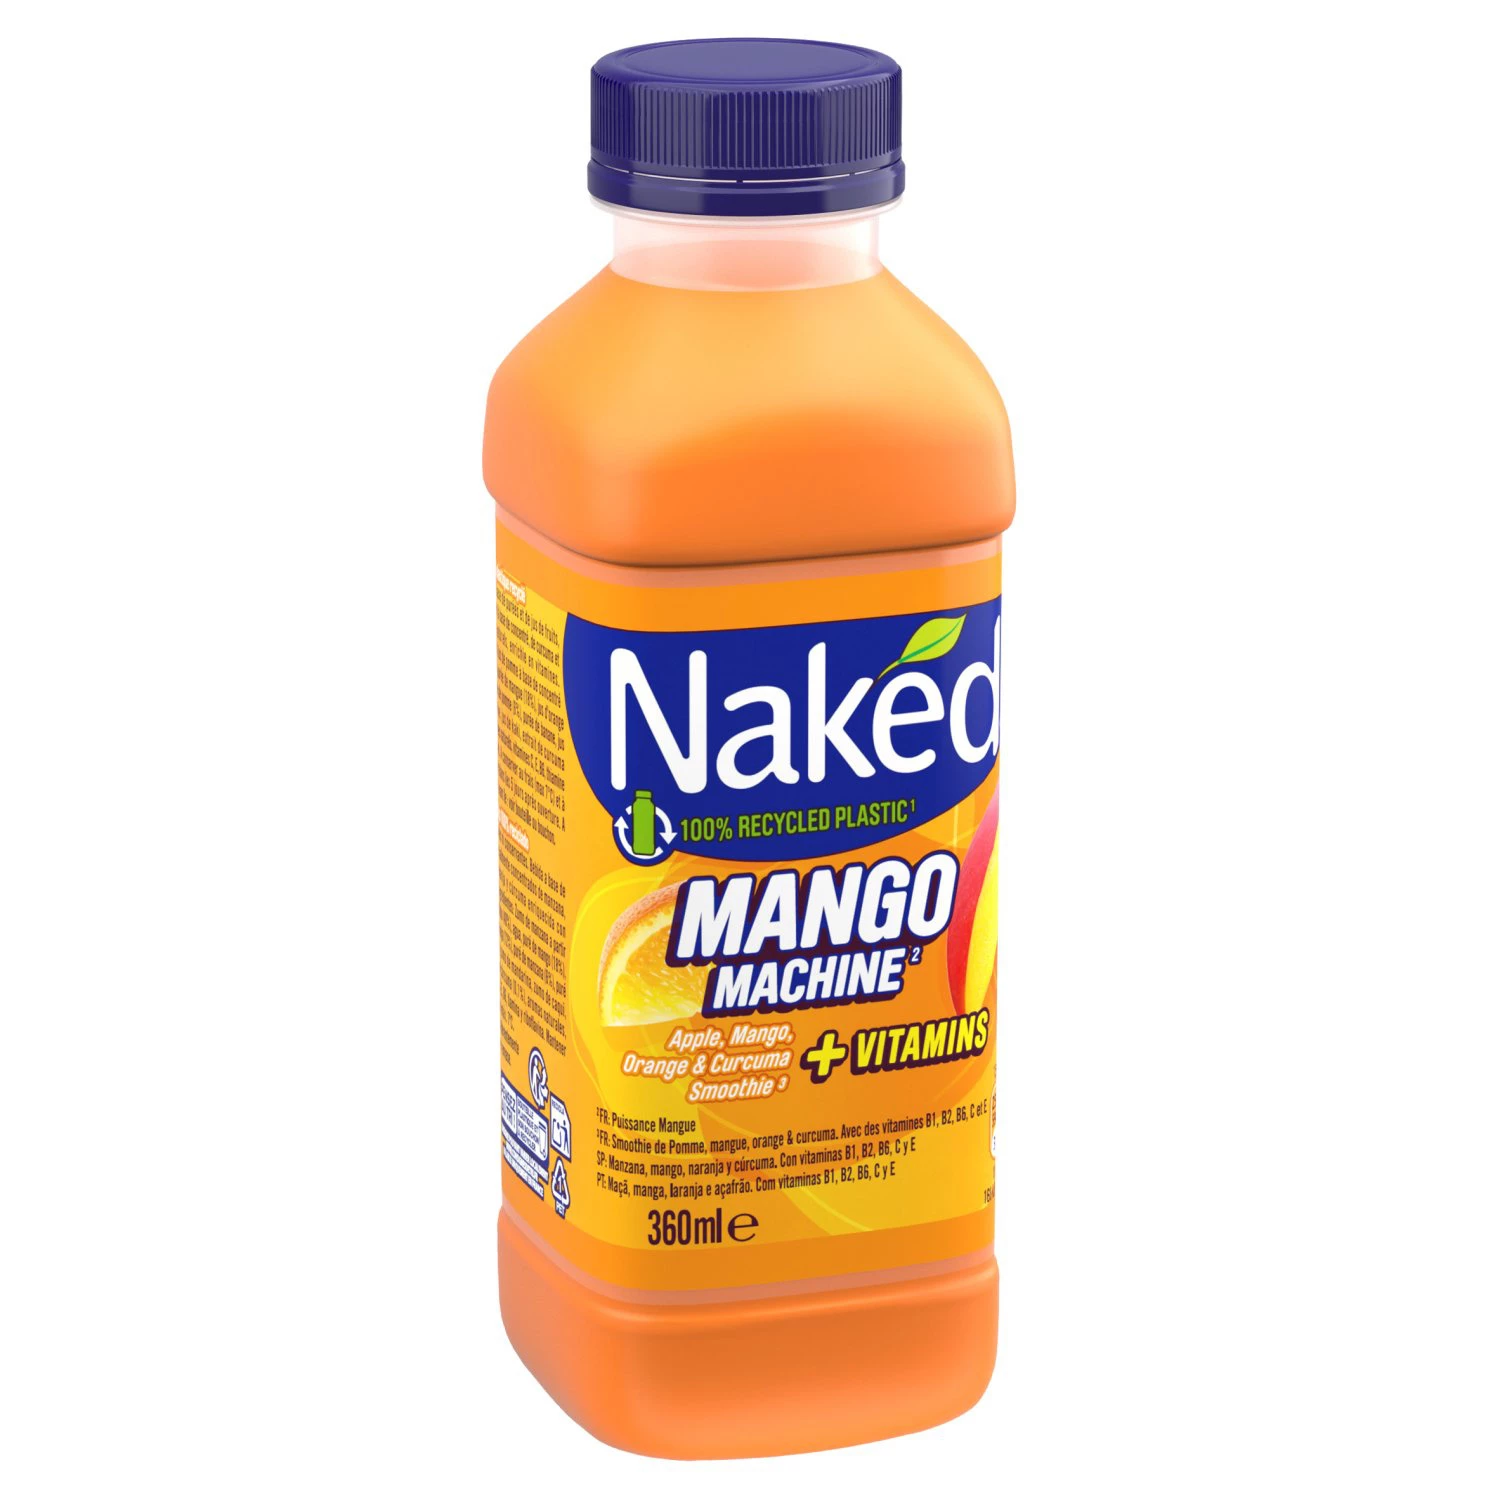 Naked Mango Pet 360ml